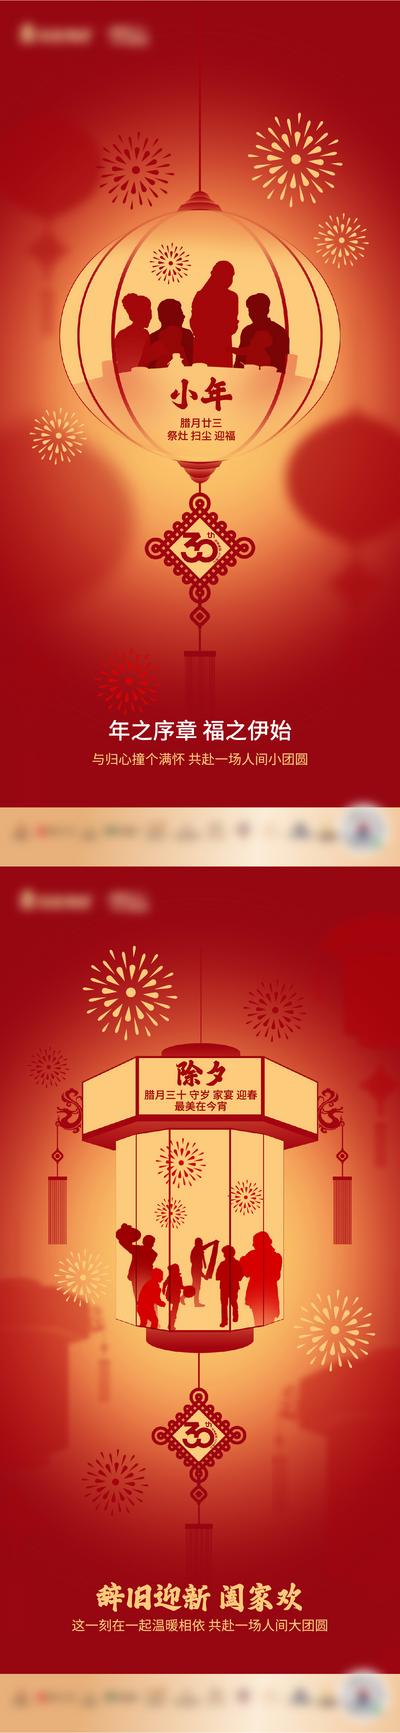 【南门网】海报 房地产 中国传统节日 除夕 小年 年俗  灯笼 剪影 红色 